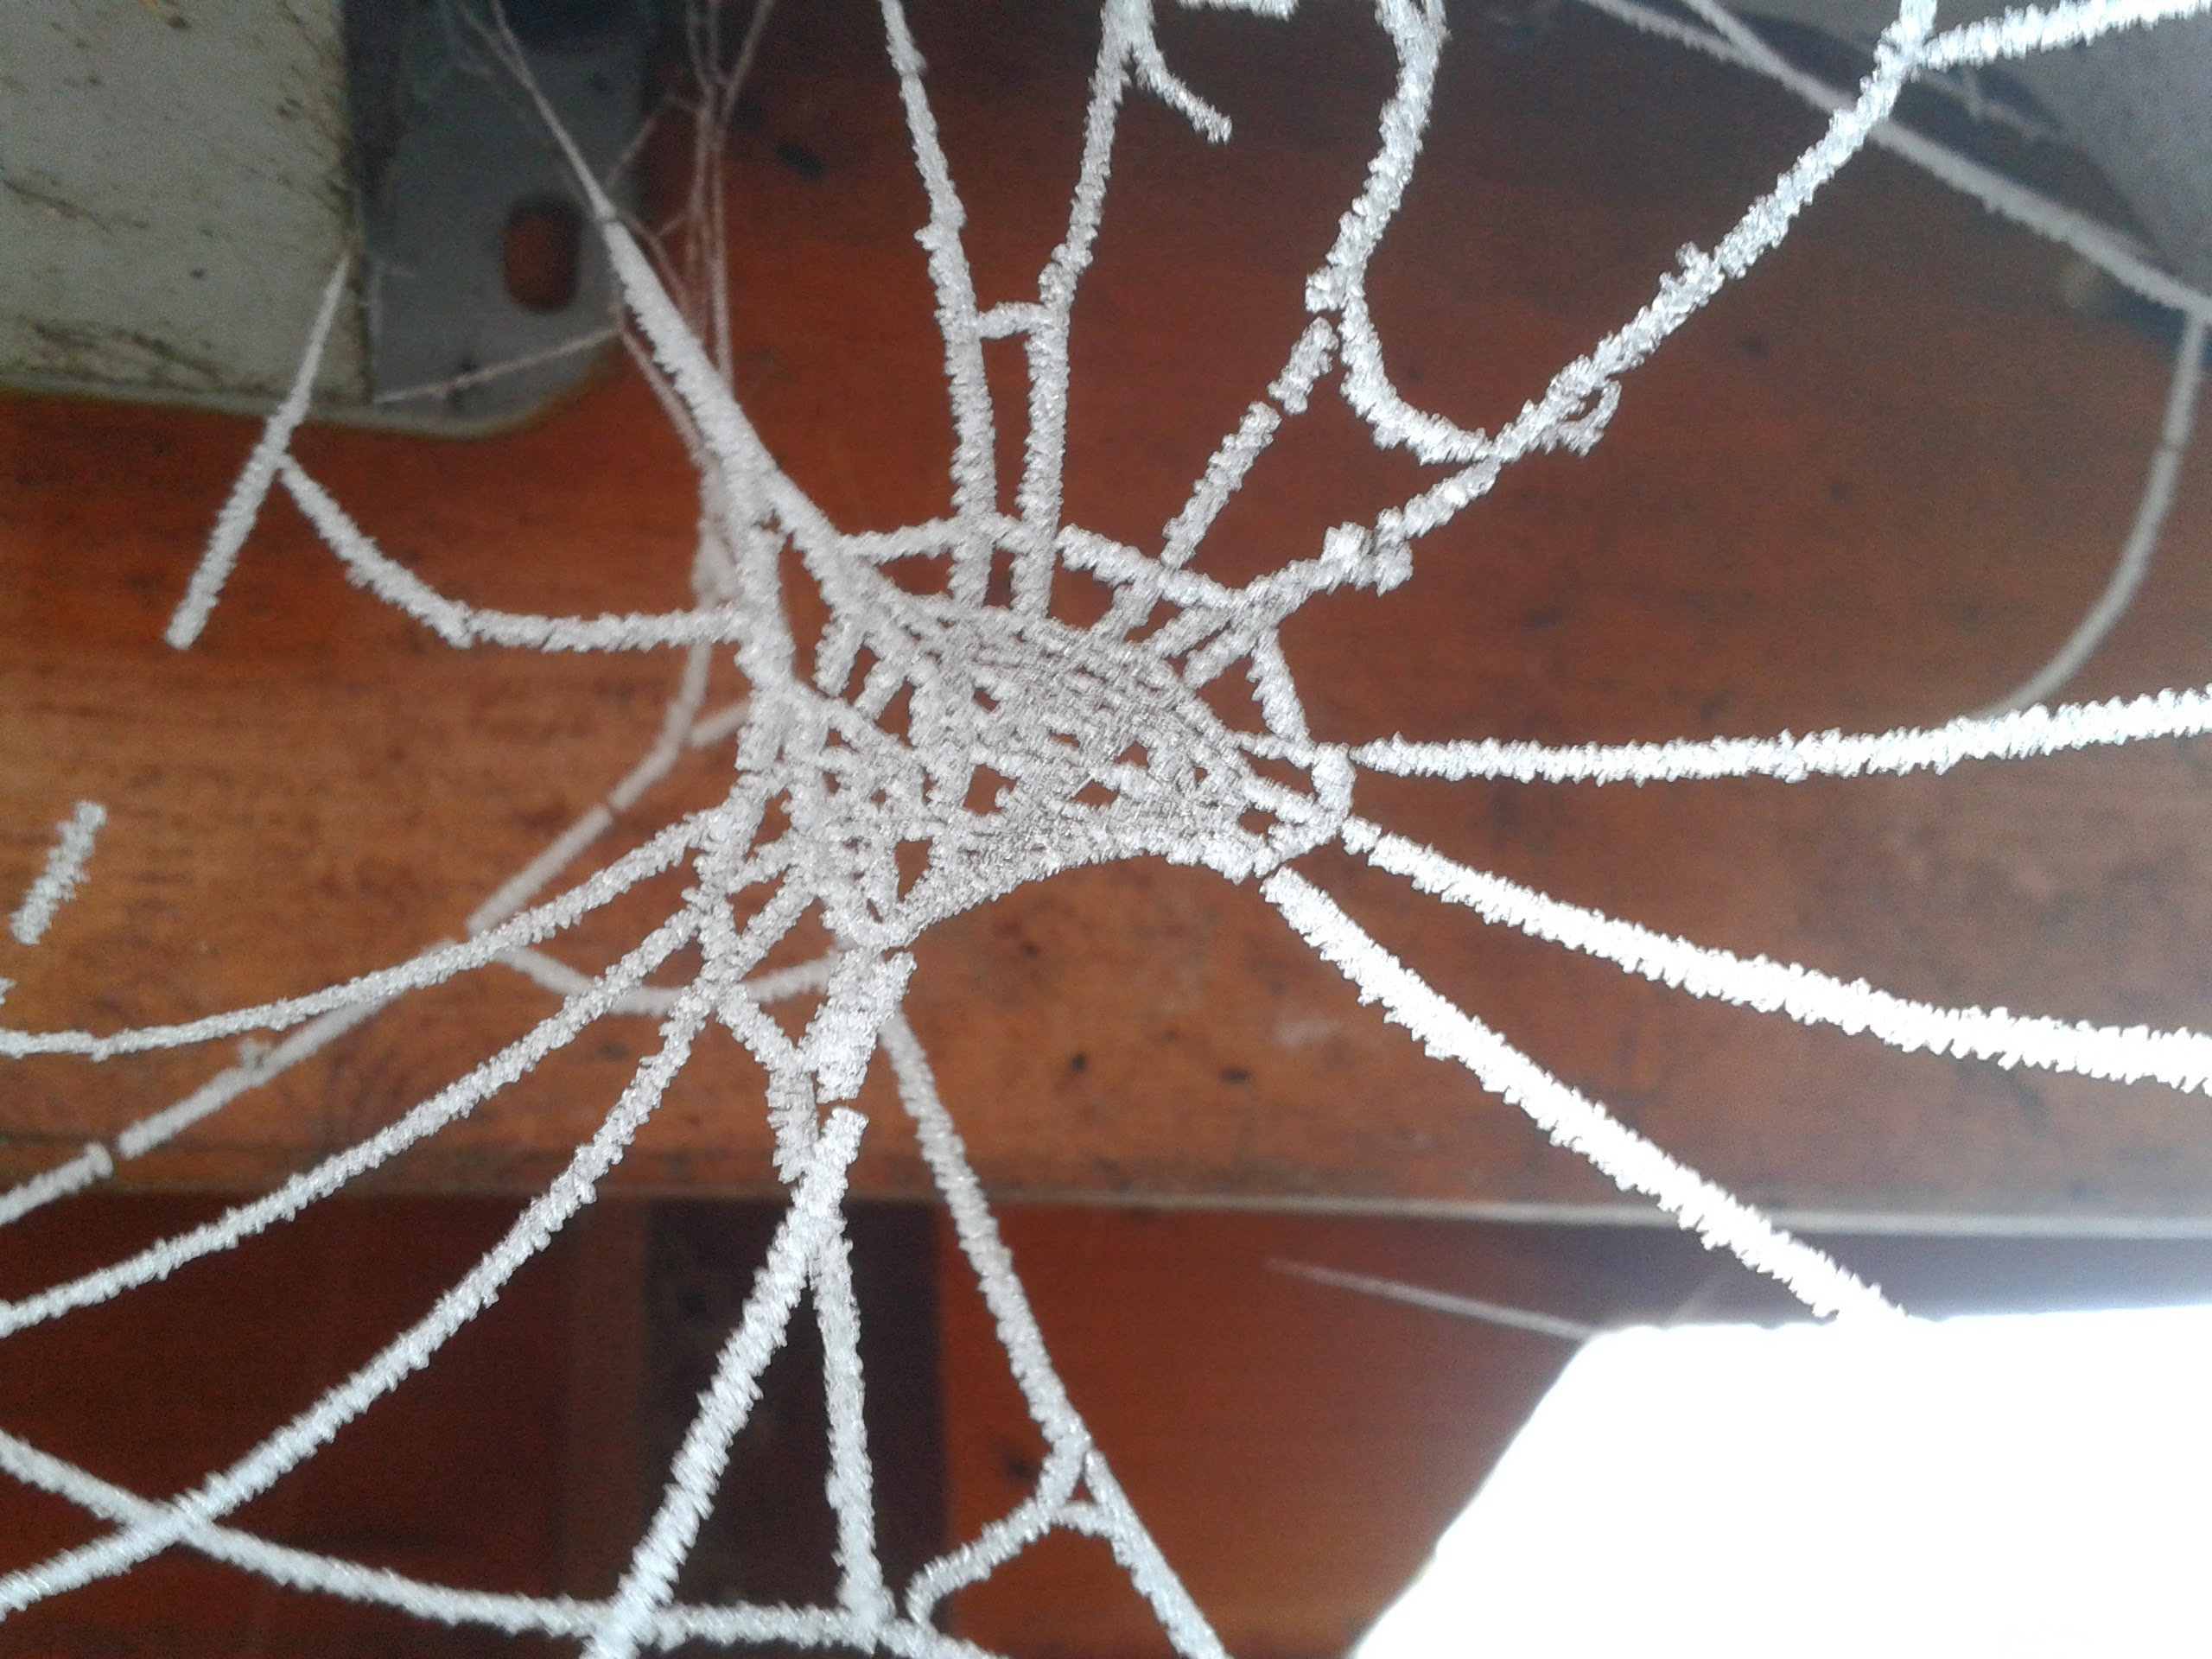 Den Winter überlebt wird auch die Konstrukteurin dieses Netzes nicht haben. Dafür ist das Gespinst im Frost besonders skuril erhalten. Kurzfristig. Aber schön.